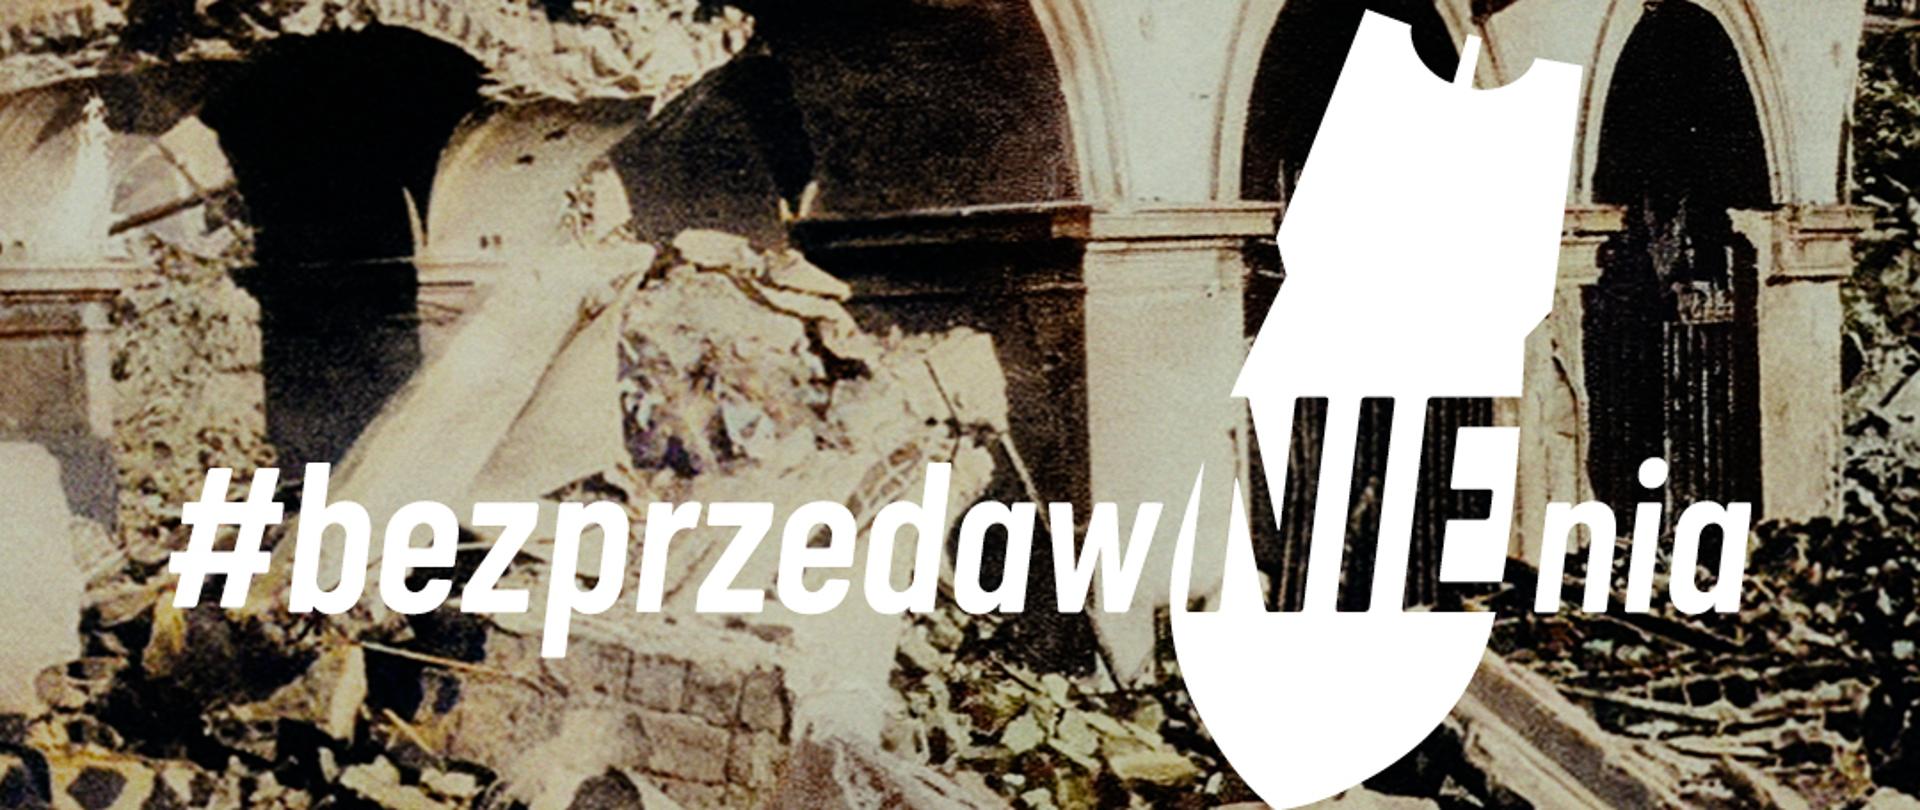 Obraz zniszczeń Pałacu Saskiego w Warszawie zniszczonego przez Niemców w trakcie II wojny światowej.